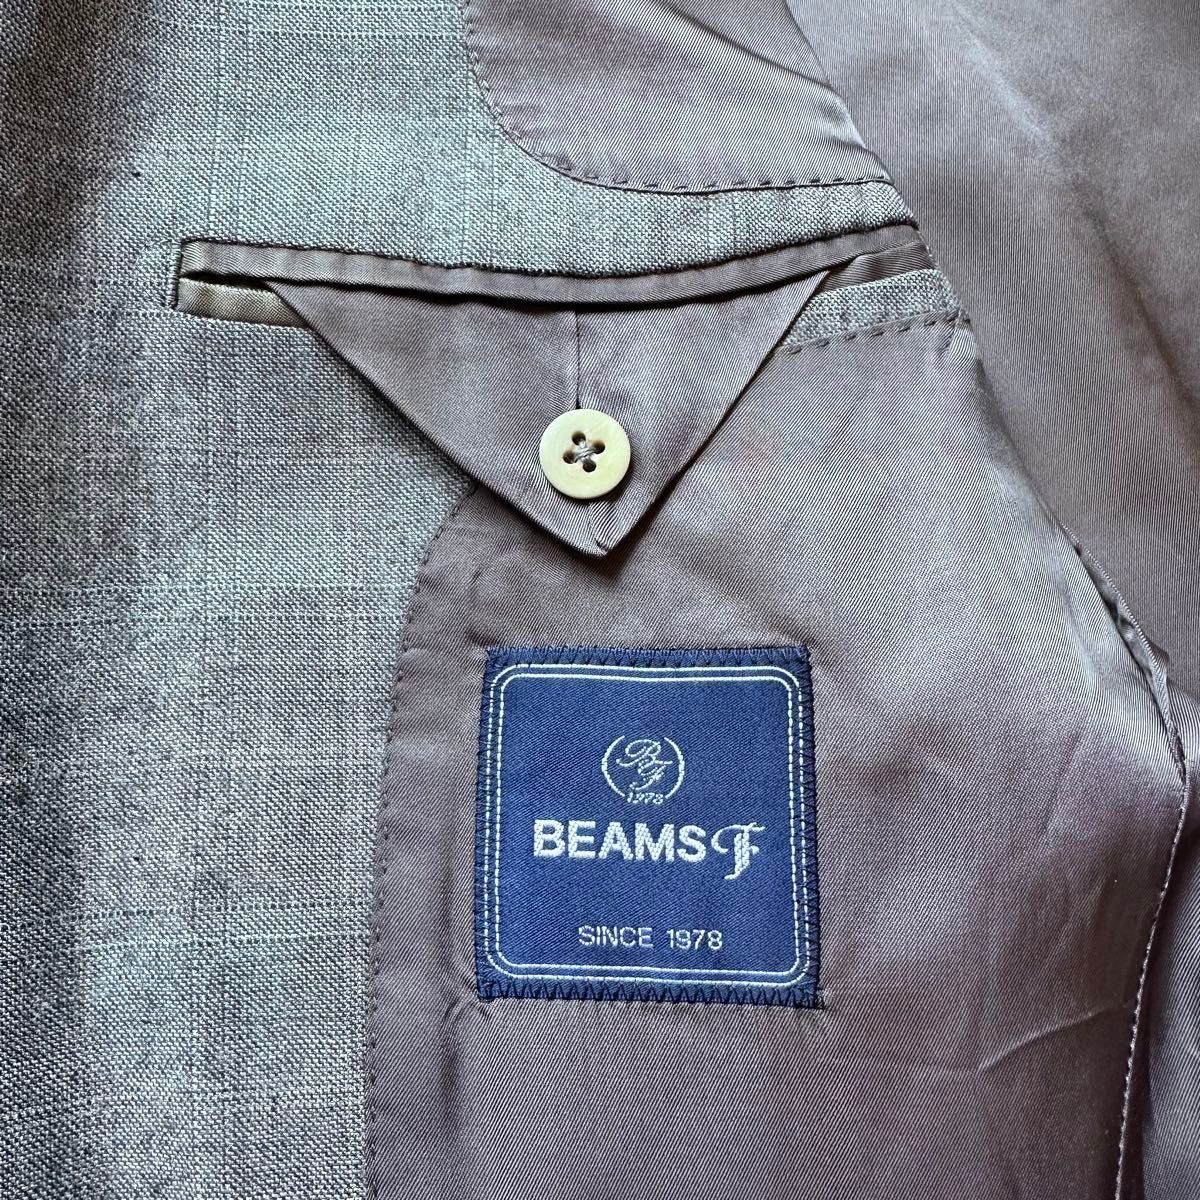 BEAMS F ビームスエフ テーラードジャケット ビジネスジャケット ウール グレー 総裏 3B 段返り